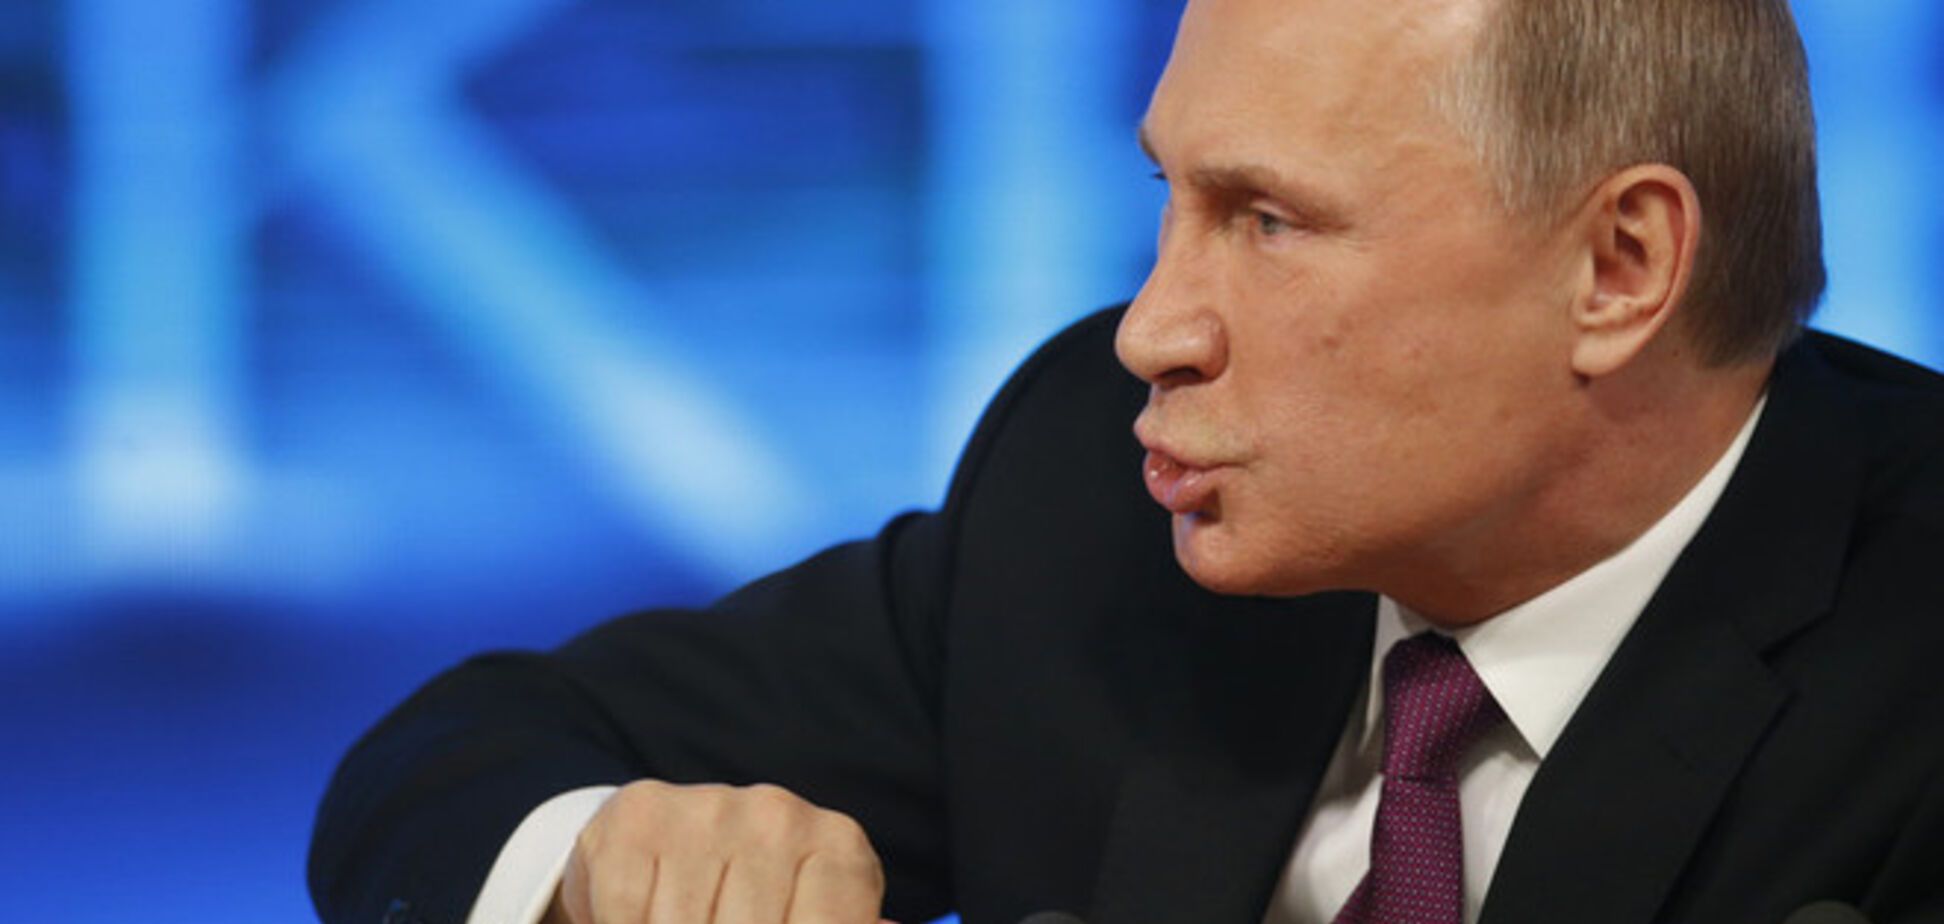 Путін: Росія не буде брати участь у дорогій гонці озброєнь, і всі суперечки надалі буде вирішувати мирно